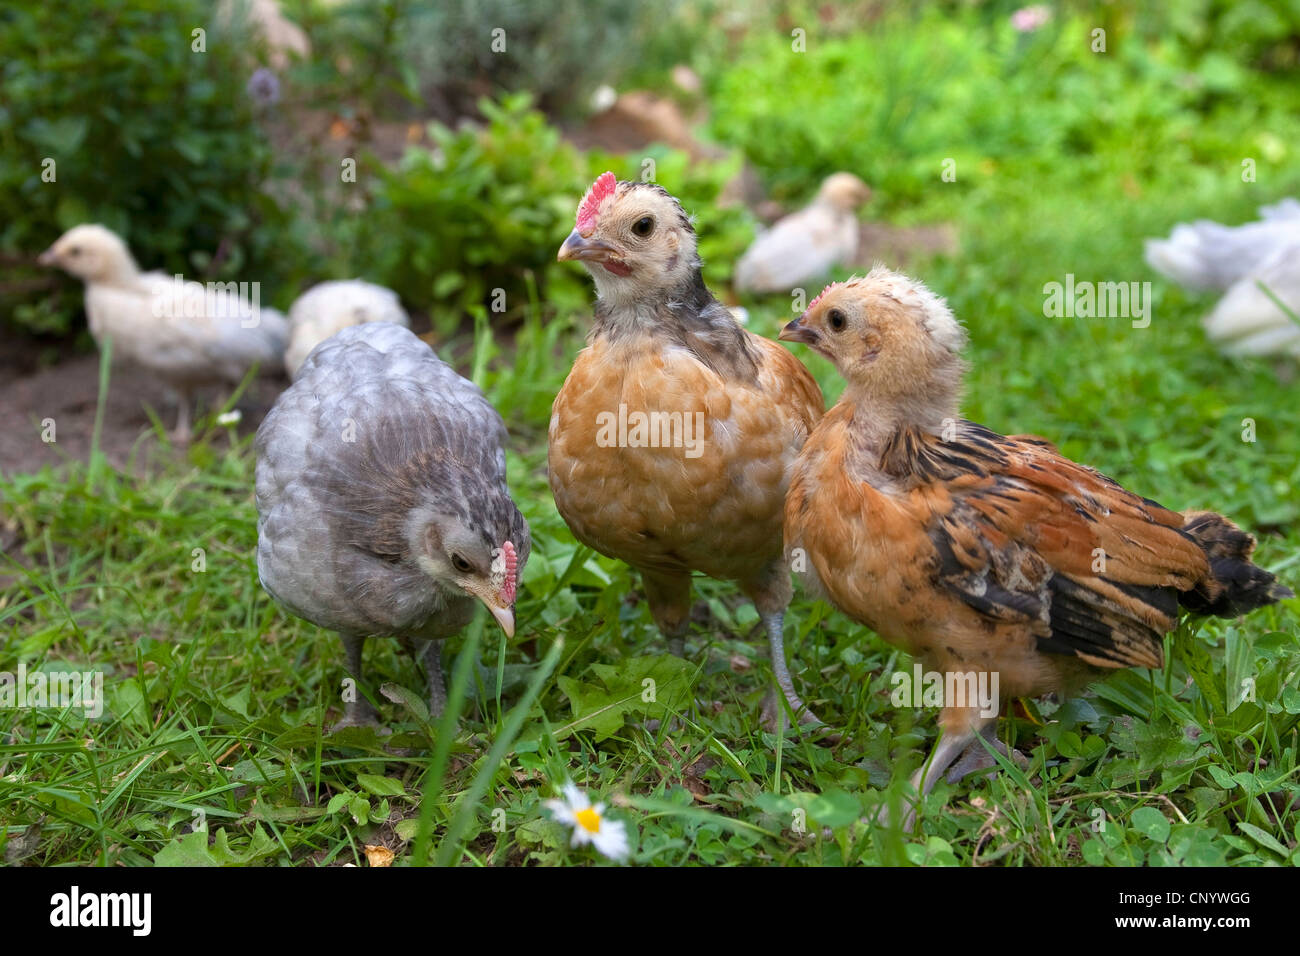 domestic fowl (Gallus gallus f. domestica), chicks in a meadow, Germany Stock Photo